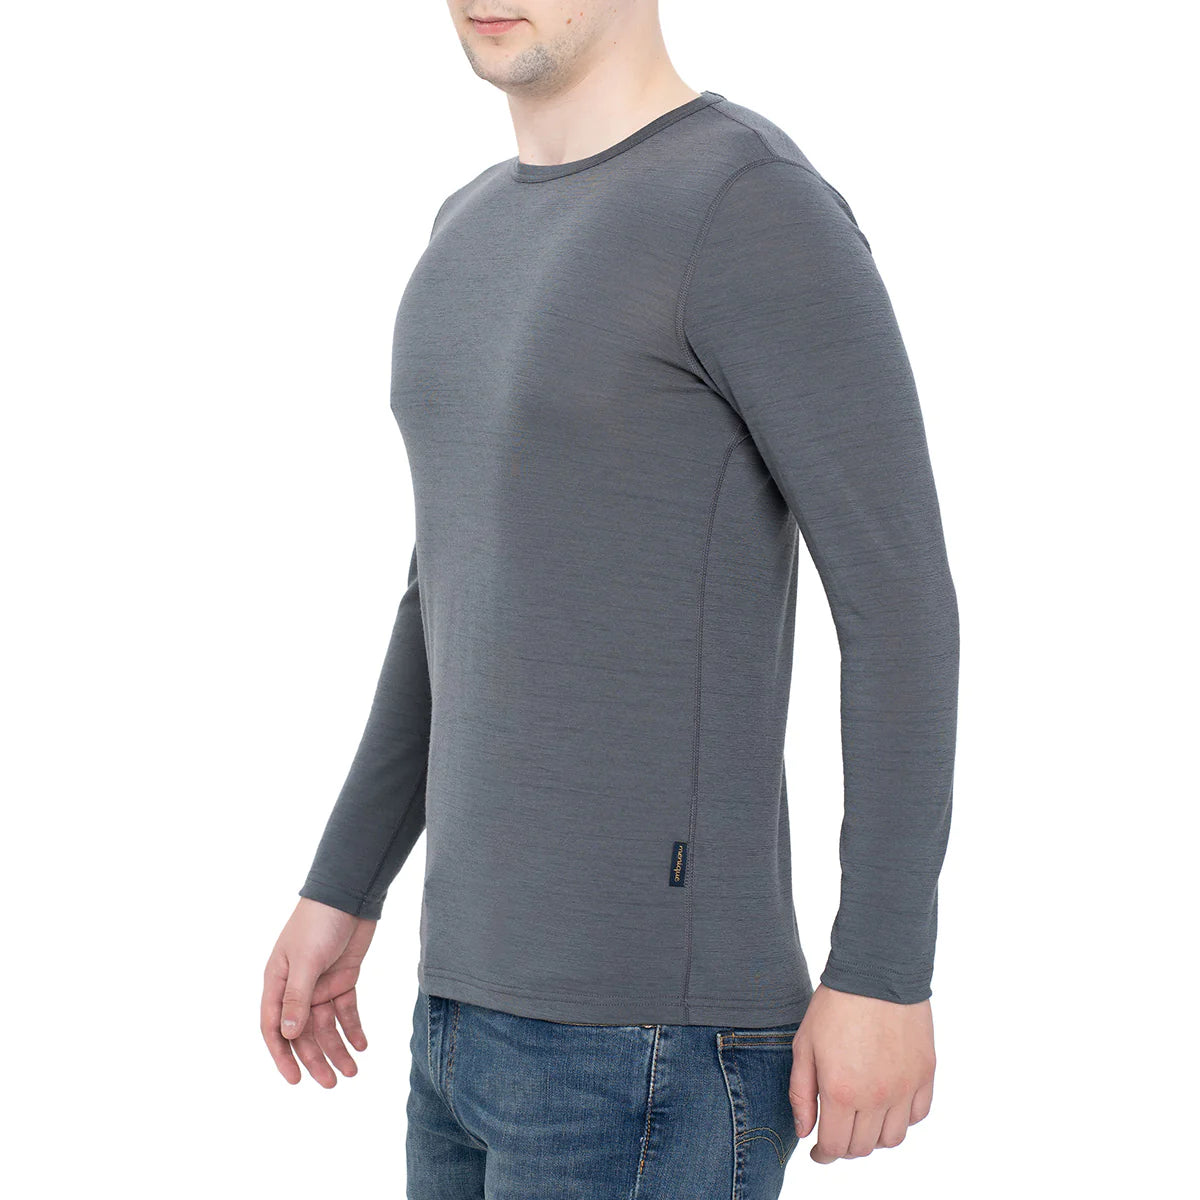 Merino T-shirt for men (Long Sleeves) - Menique